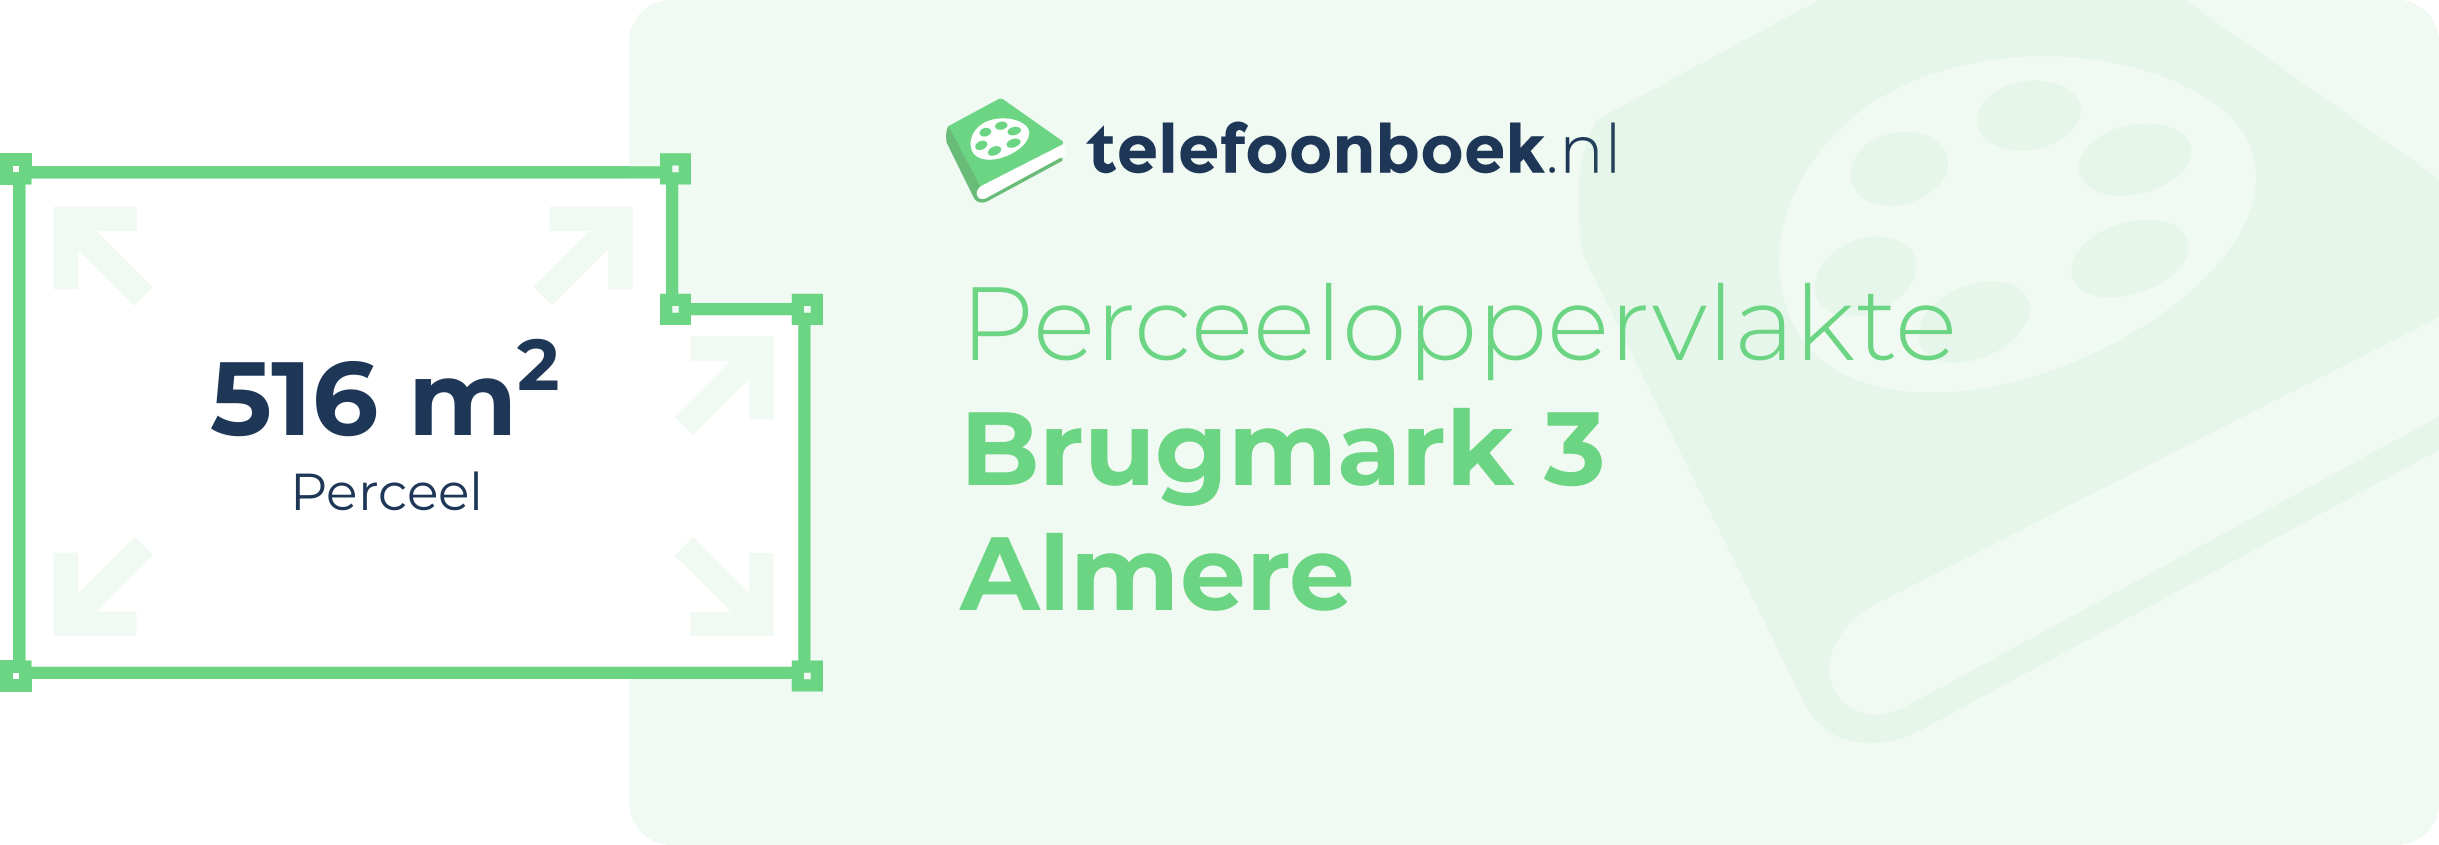 Perceeloppervlakte Brugmark 3 Almere